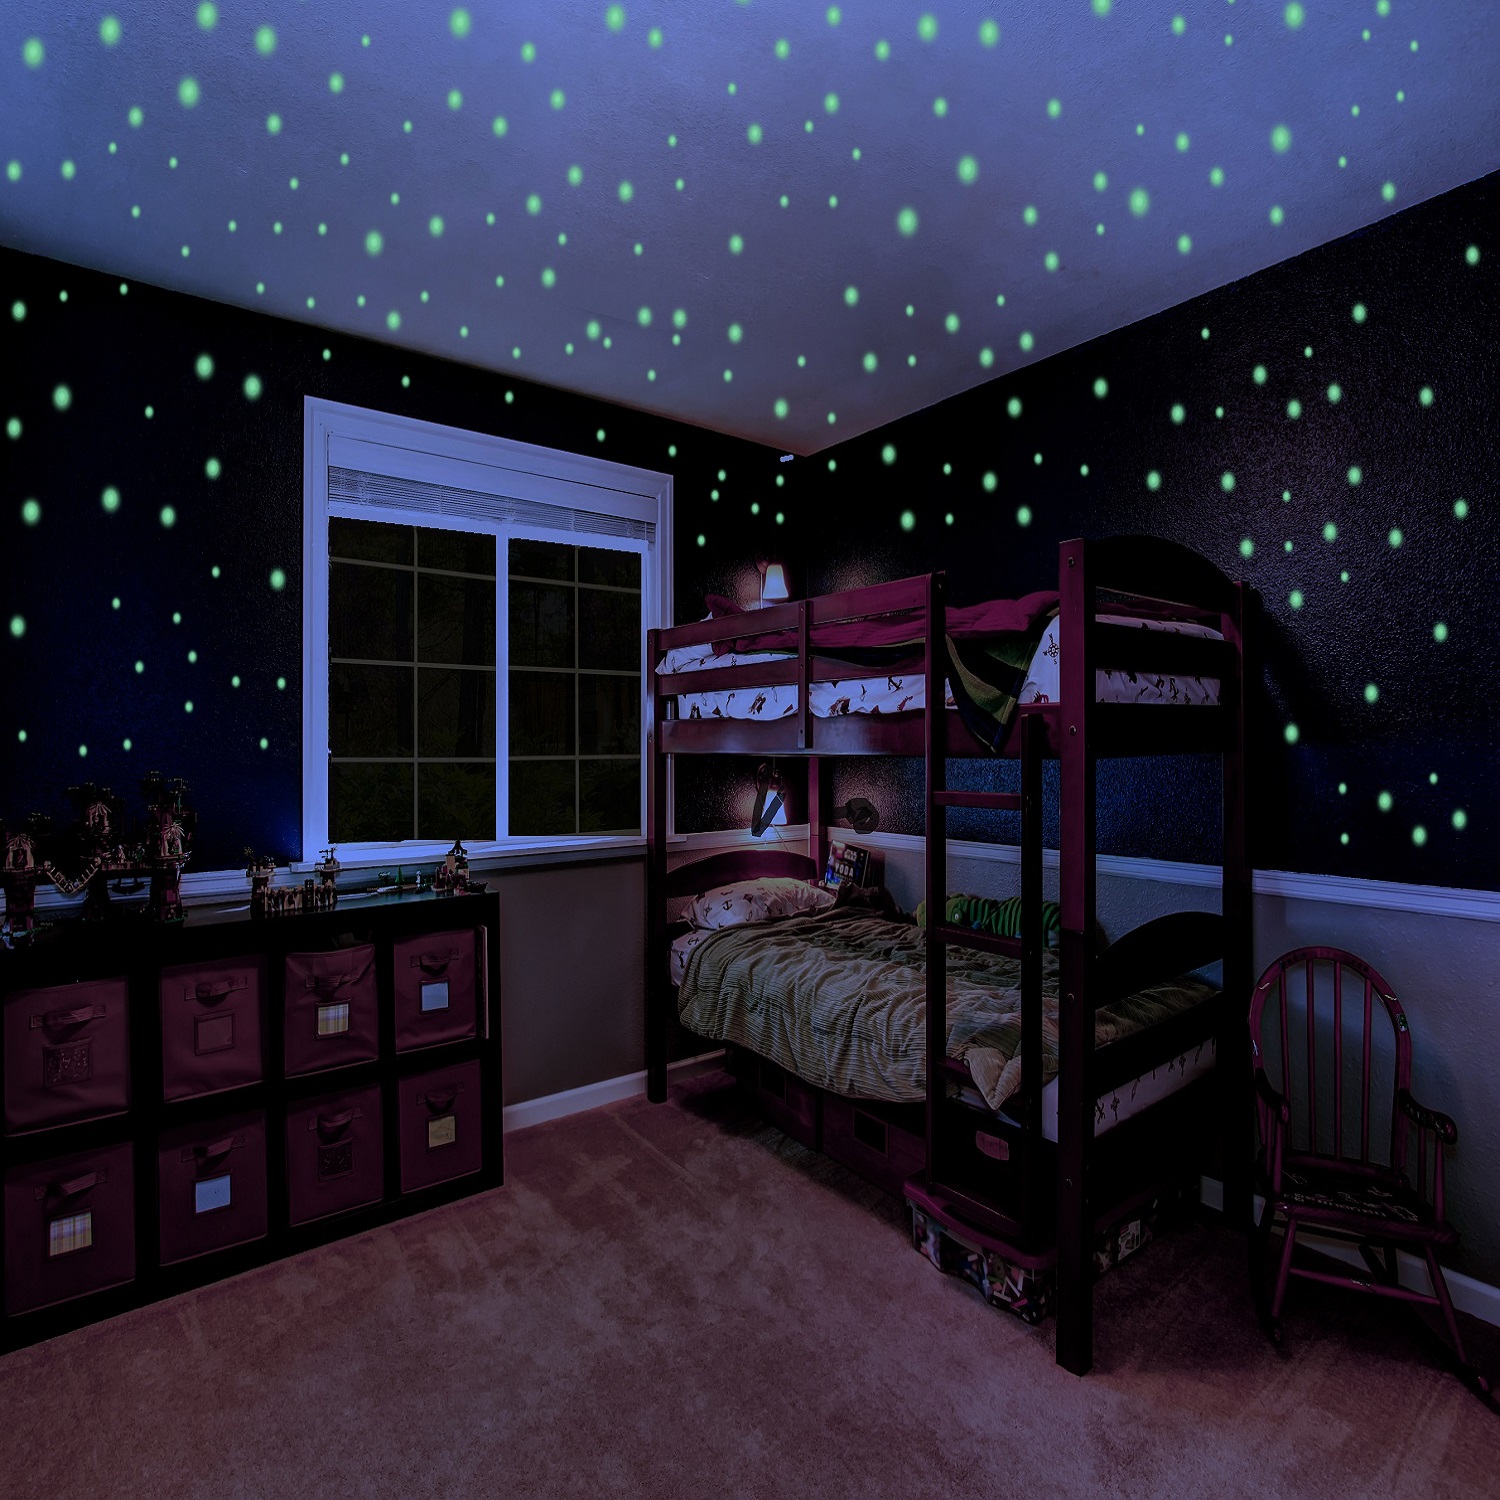 Children Bedroom with Glow In The Dark Stickers